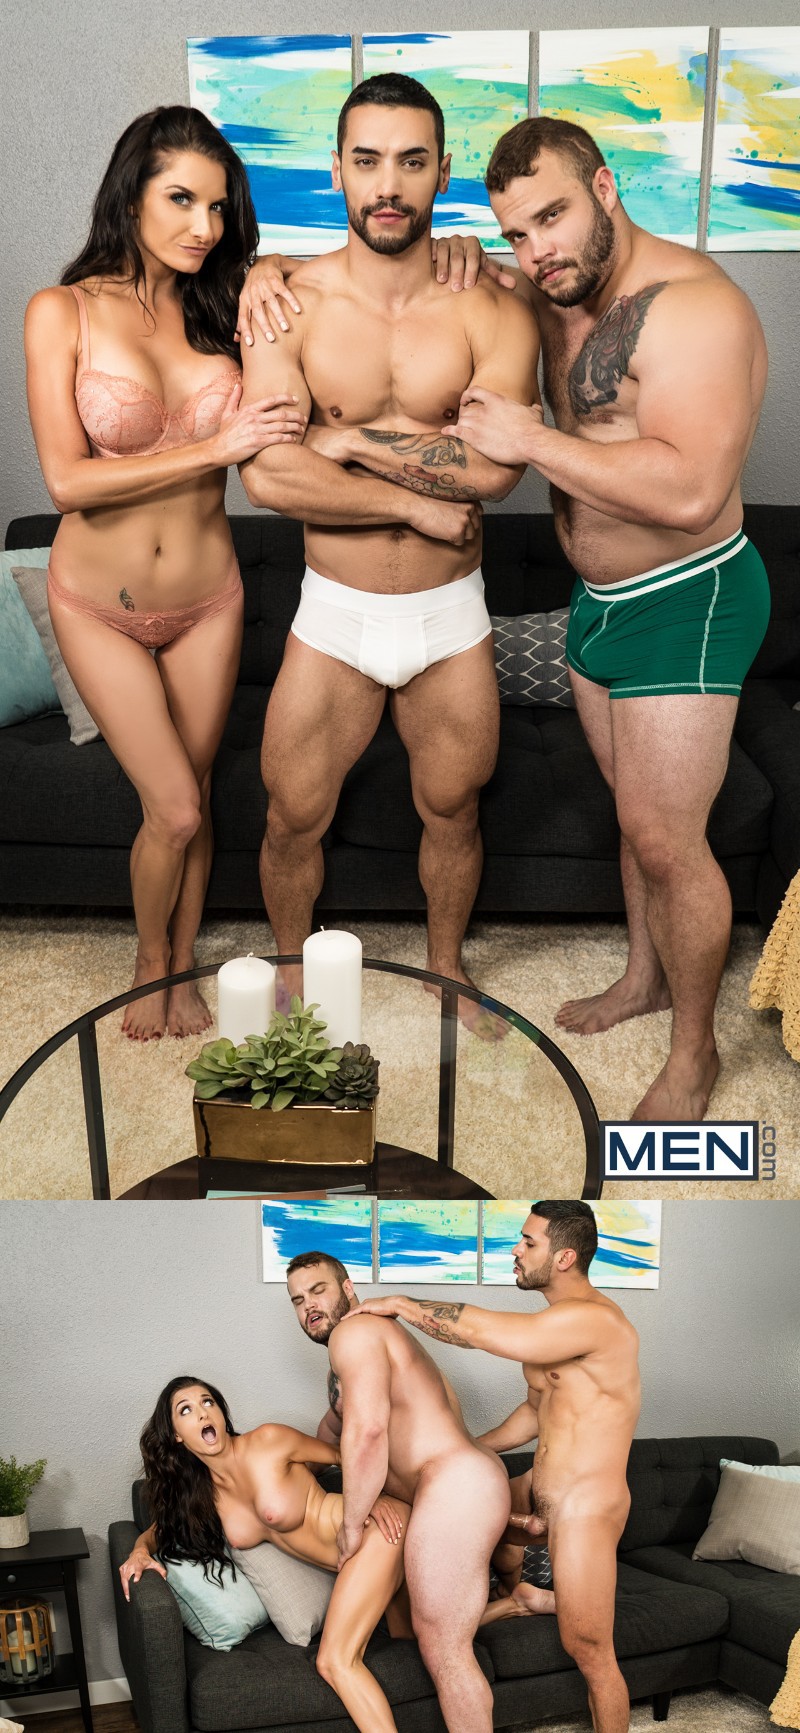 Bisex Men Porn - MEN.com Releases Its First Bisexual Scene & Members Hate It ...